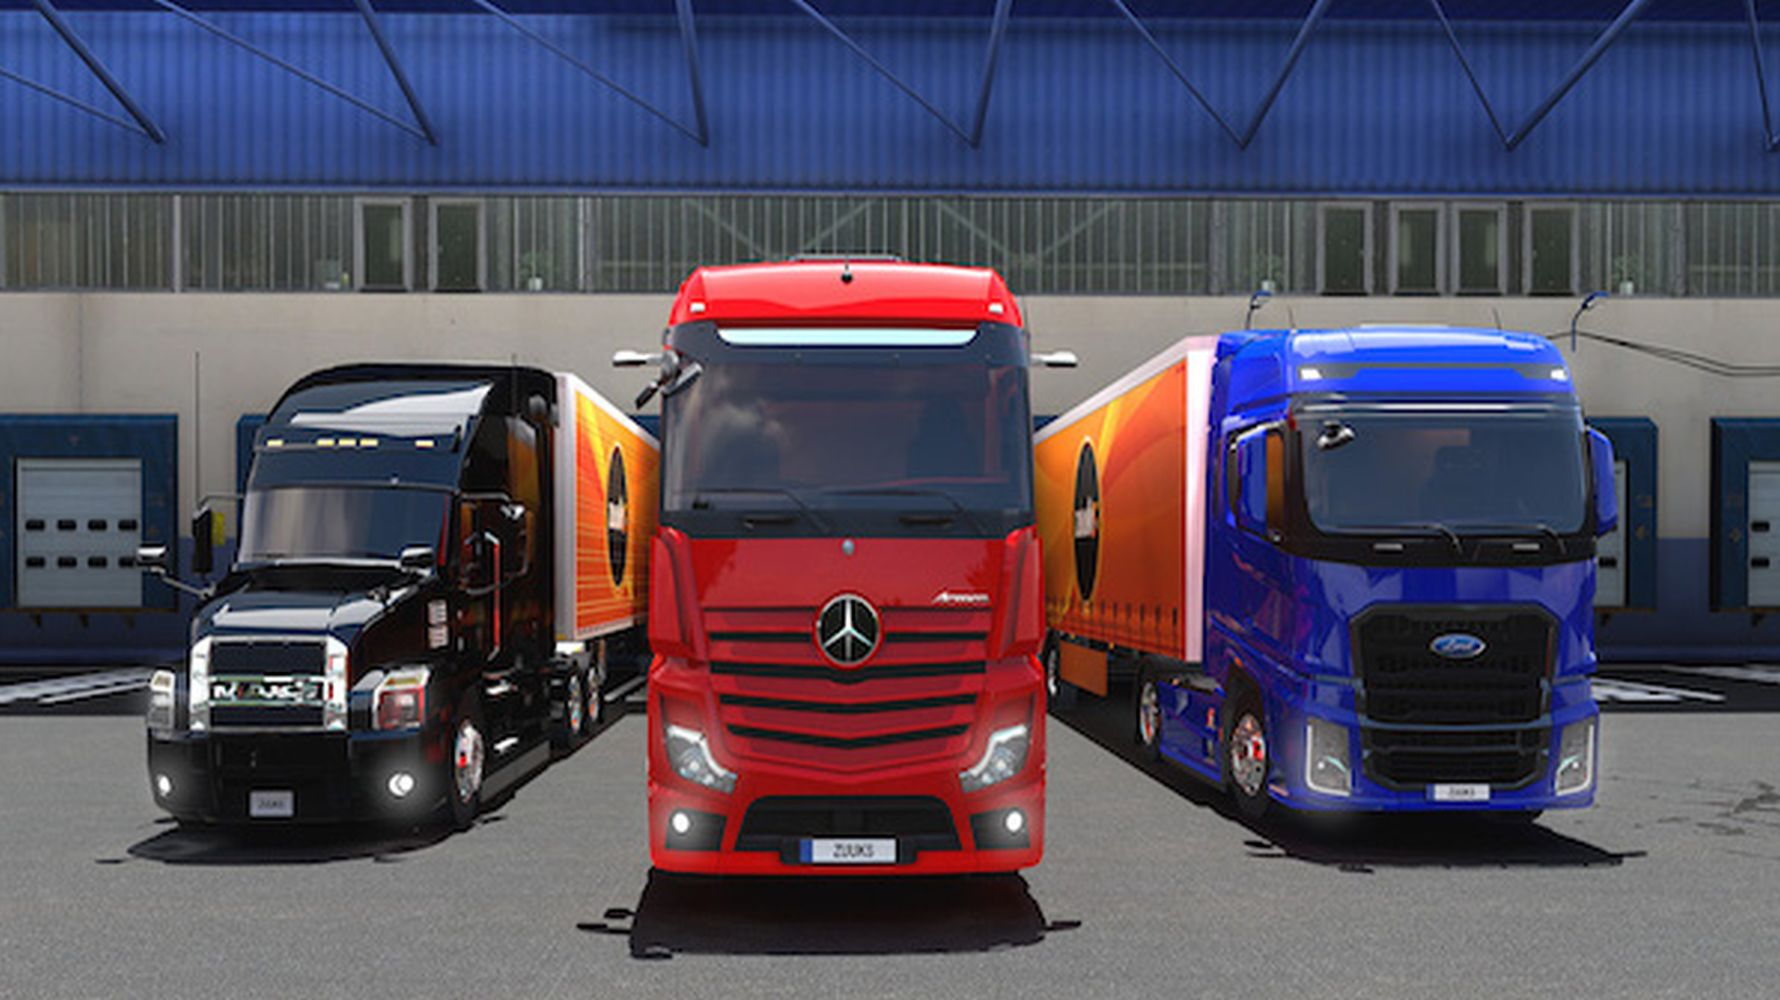 truck-simulator-ultimate